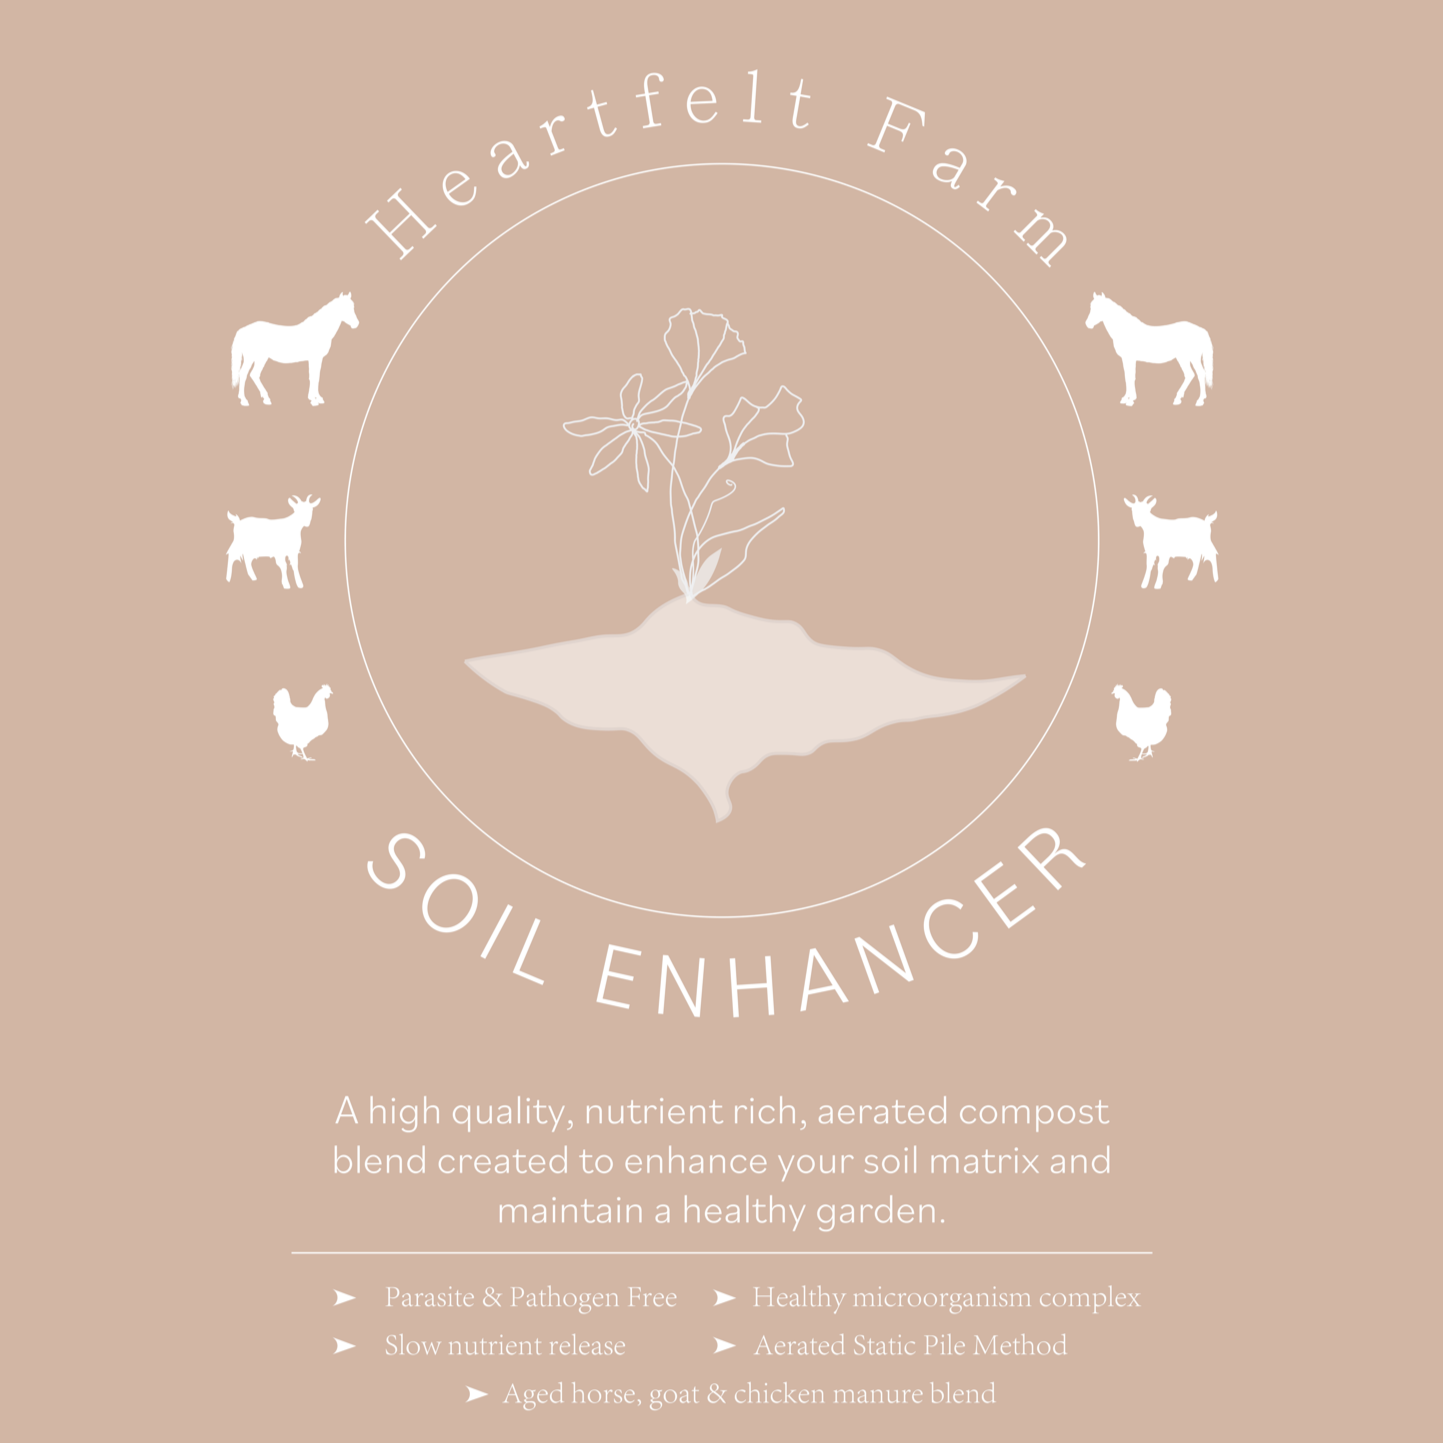 Soil Enhancer